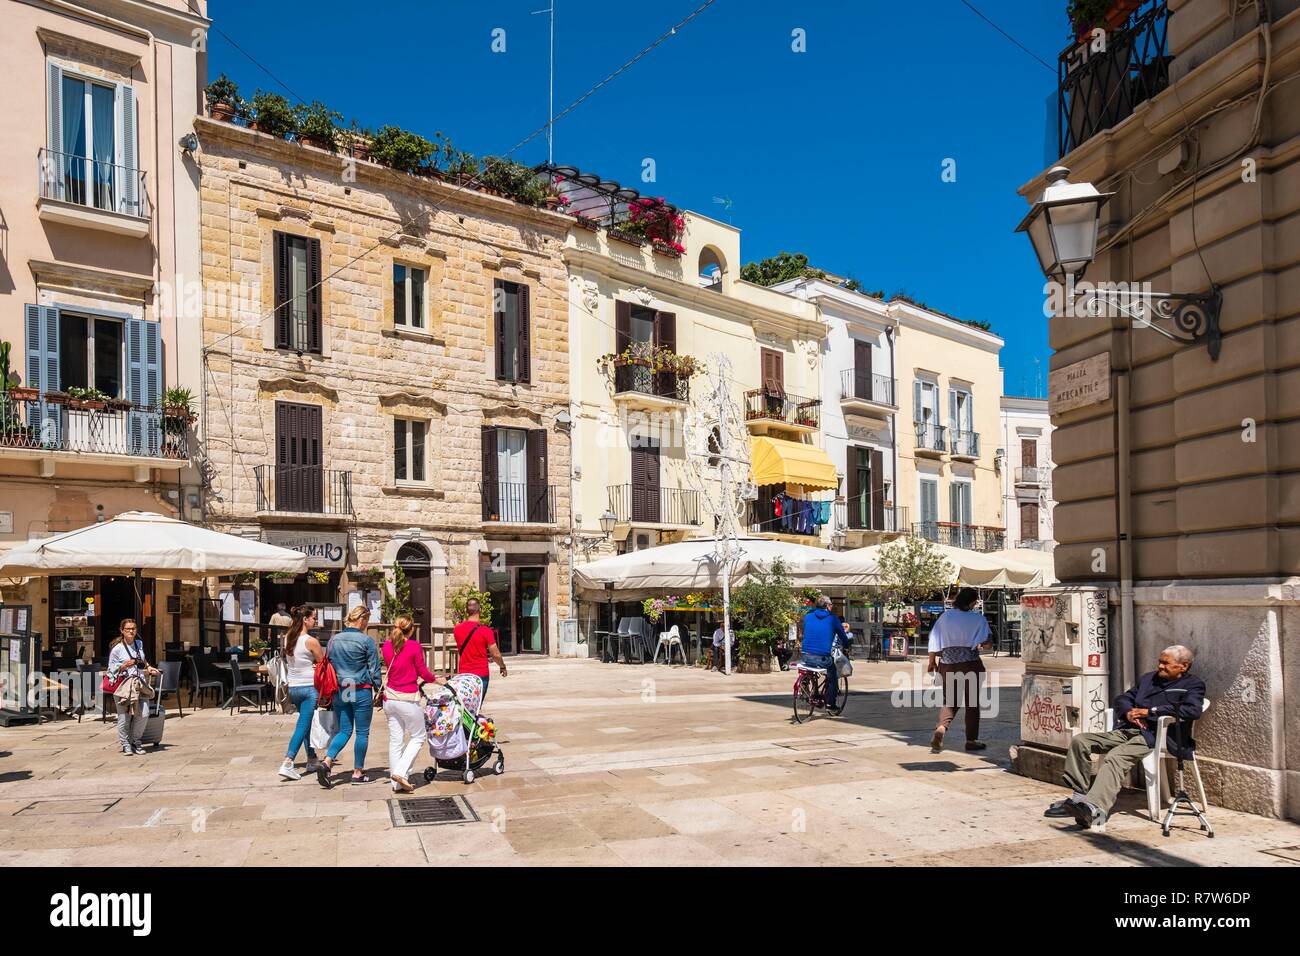 Italy, Apulia, Bari, Old Town or Bari Vecchia, Piazza Mercantile Stock Photo